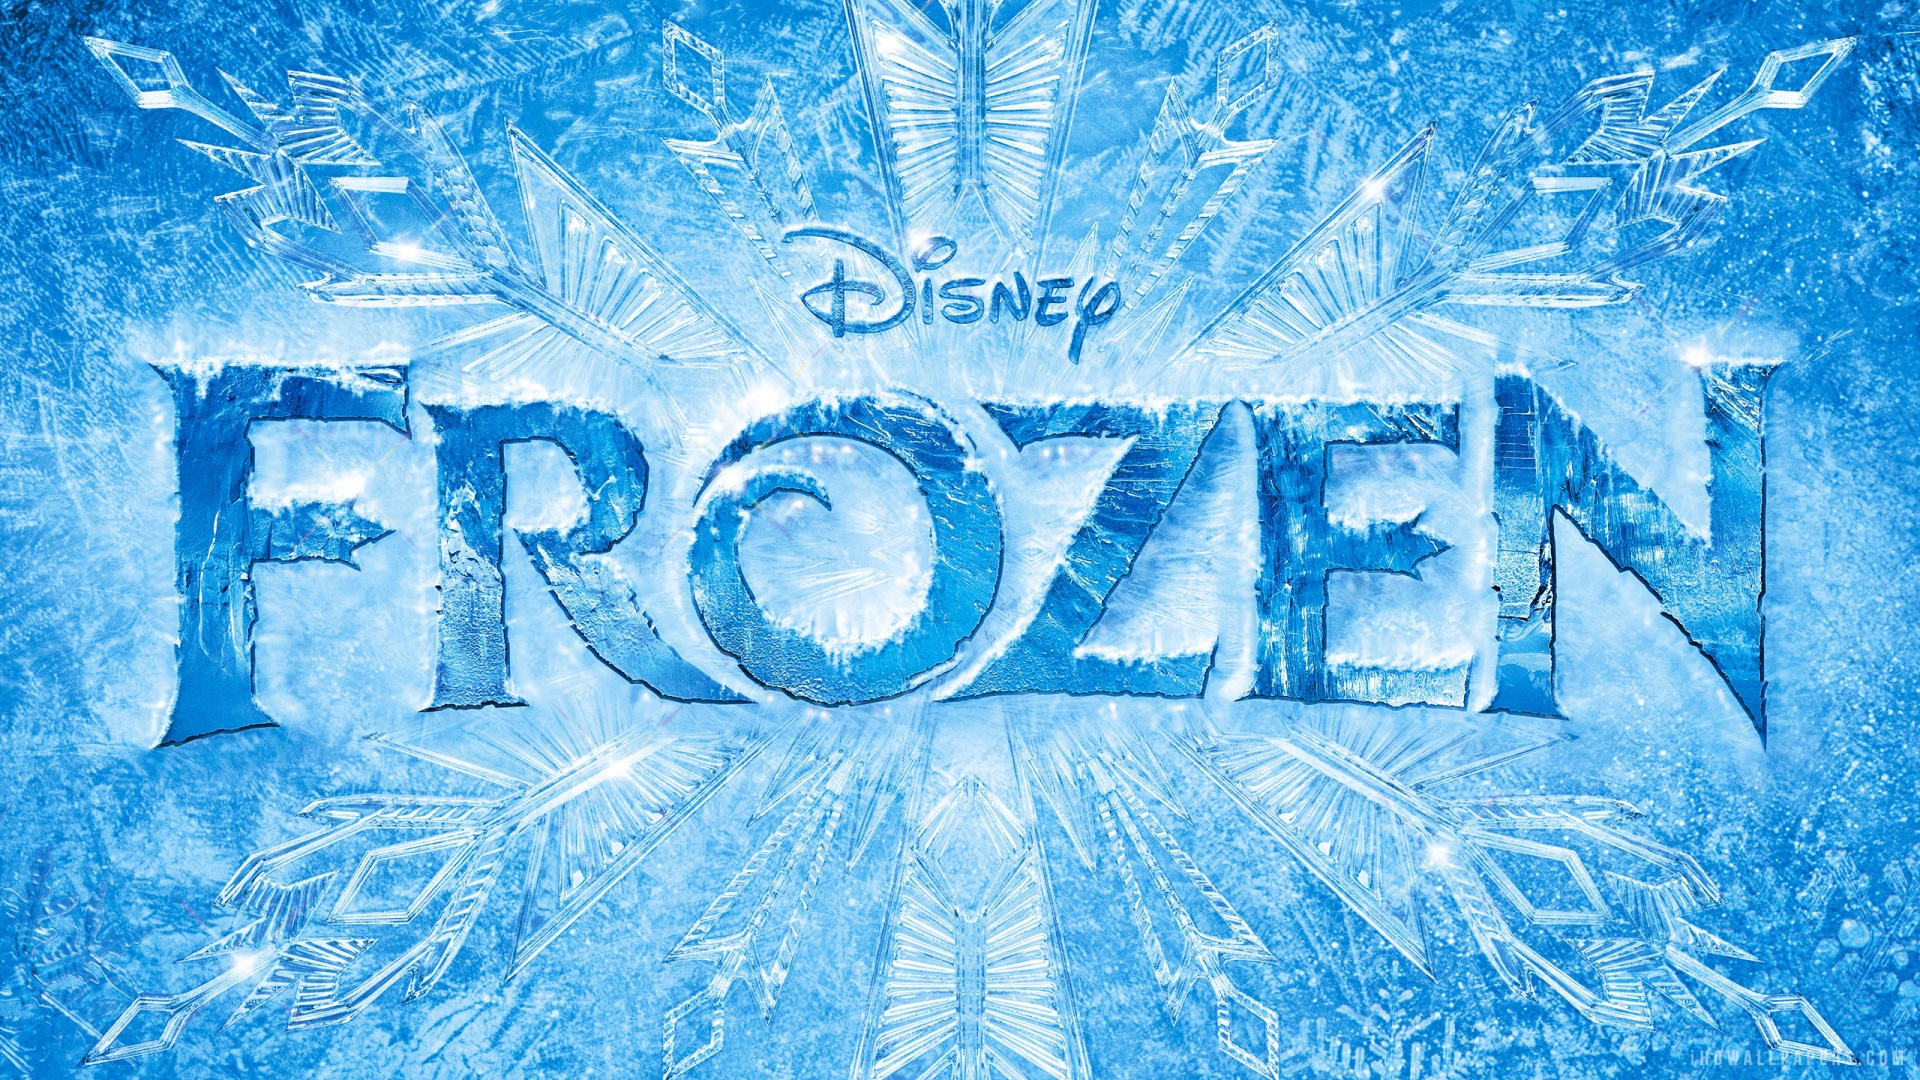 Disney Frozen 2013 HD Wallpaper   iHD Wallpapers 1920x1080